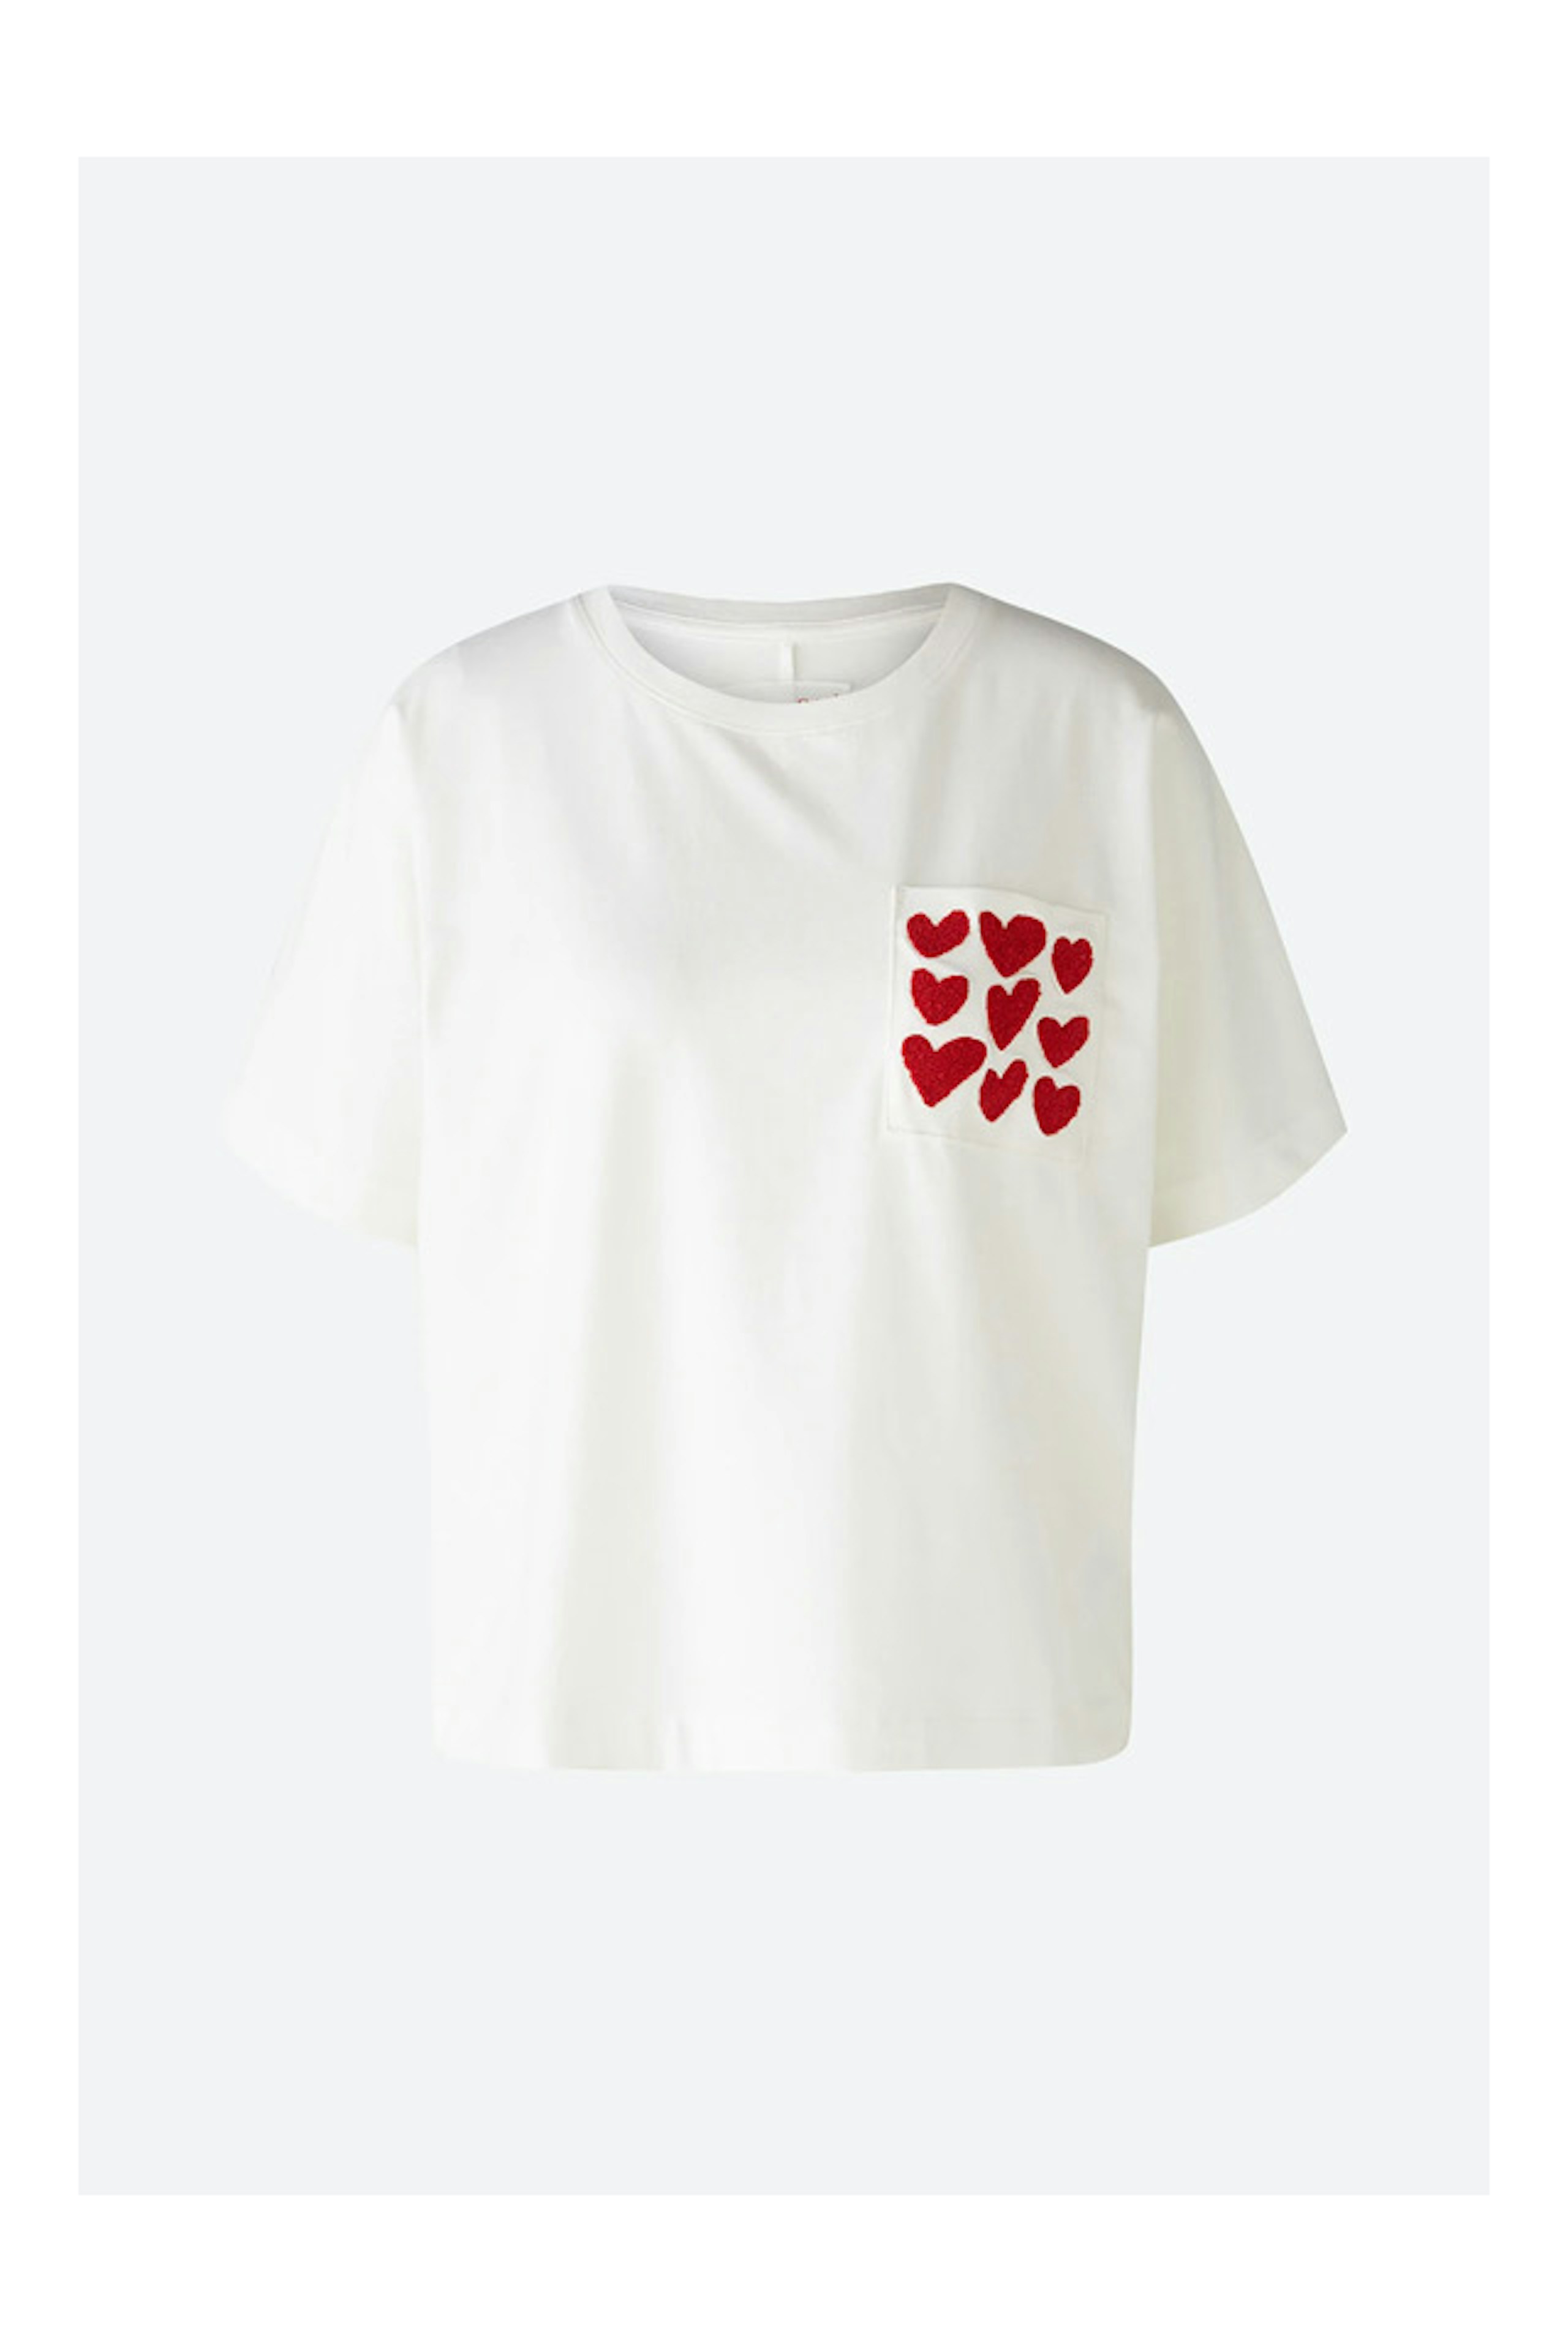 Influencer Look1 Shirt mit Herzchen